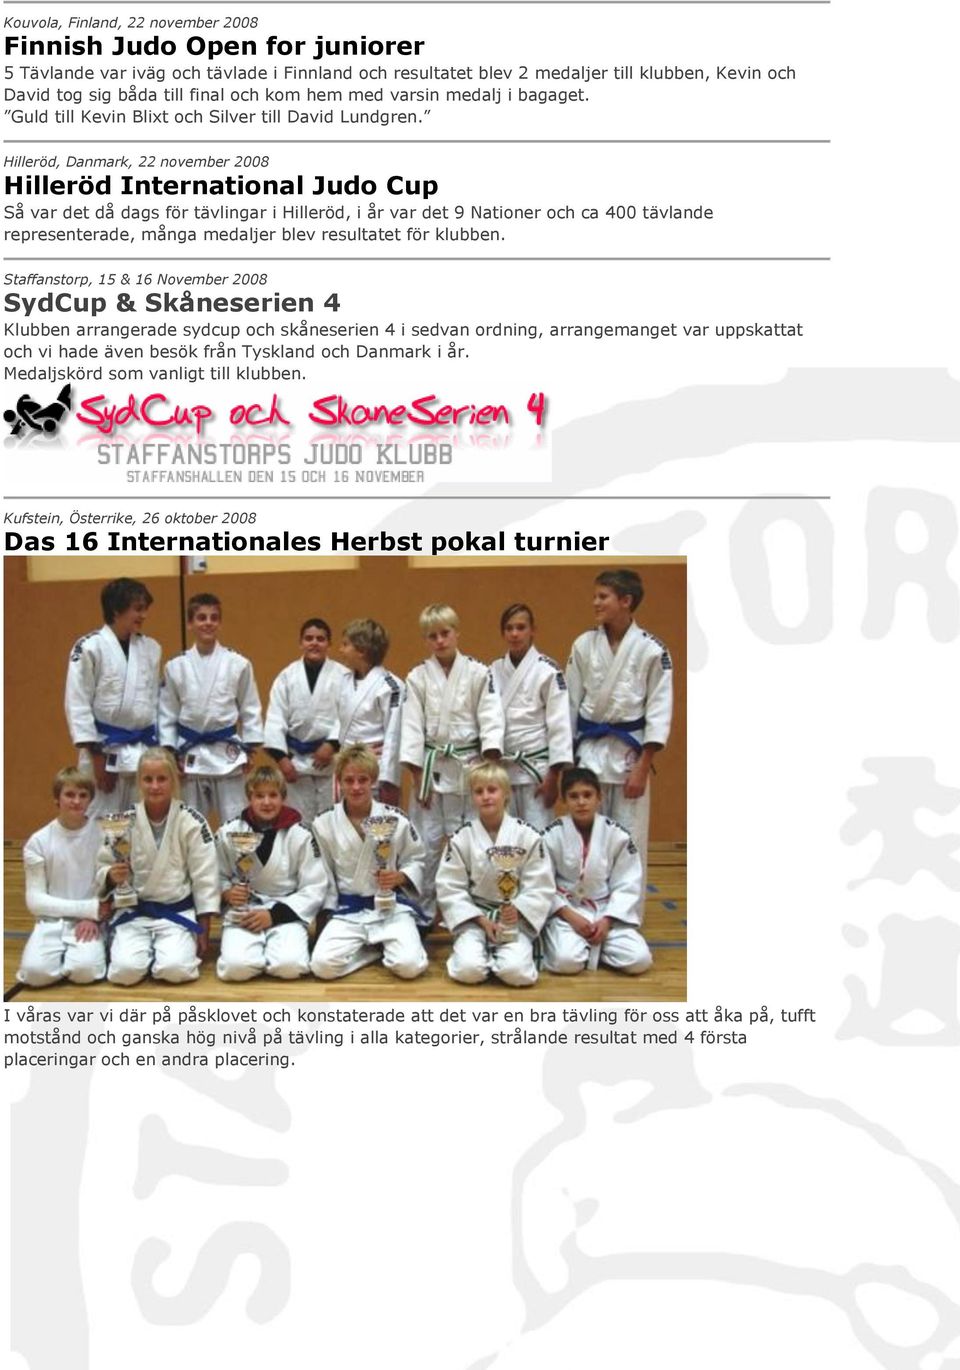 Hilleröd, Danmark, 22 november 2008 Hilleröd International Judo Cup Så var det då dags för tävlingar i Hilleröd, i år var det 9 Nationer och ca 400 tävlande representerade, många medaljer blev